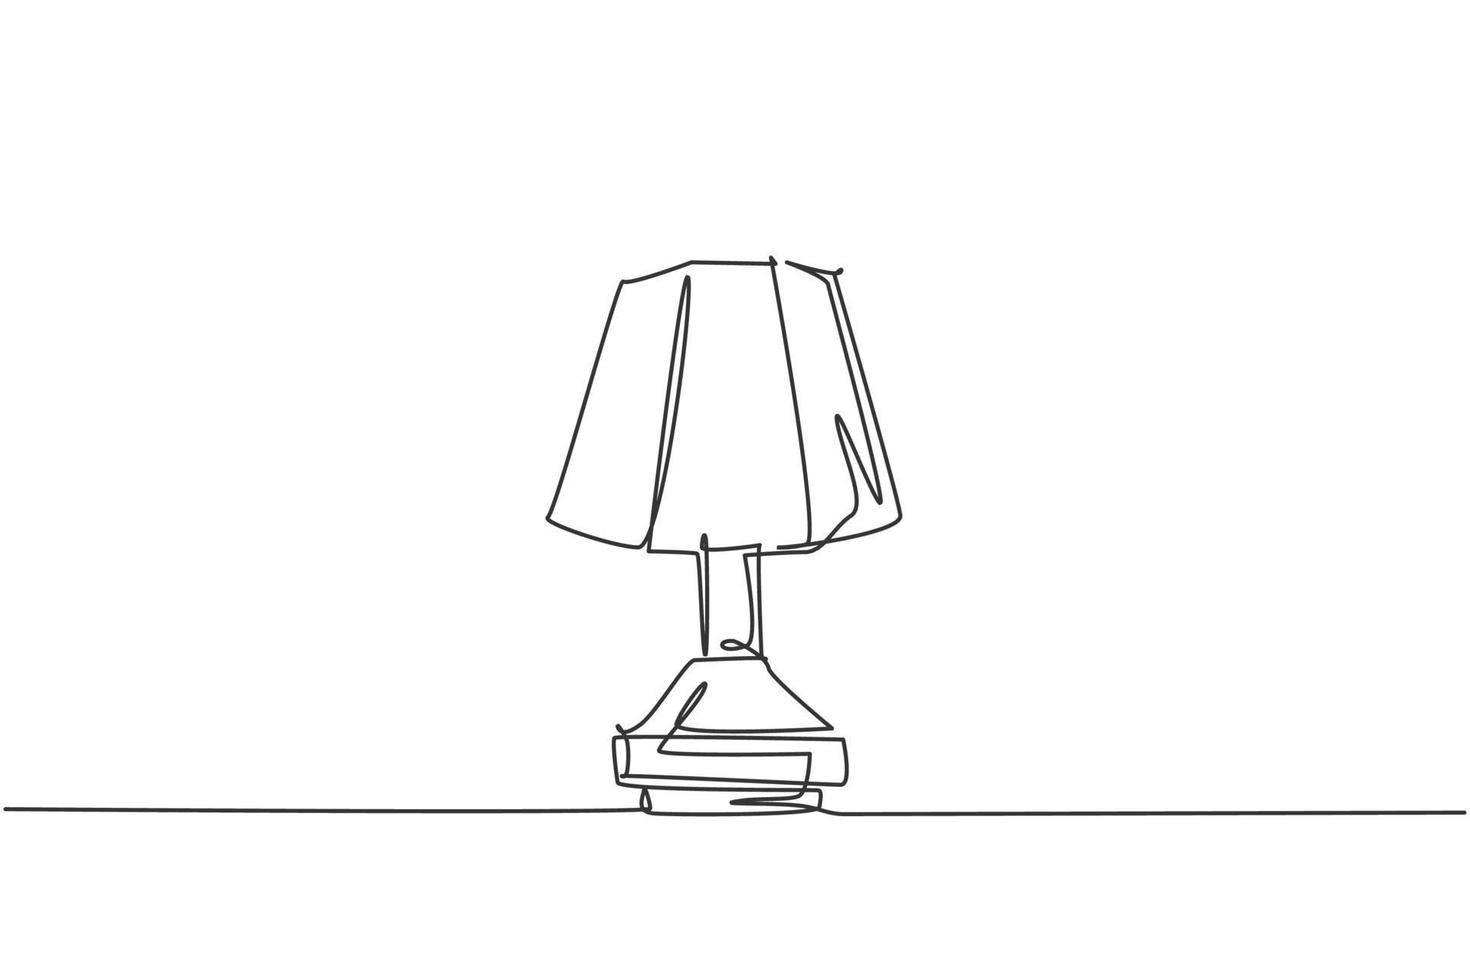 einzelne durchgehende linienzeichnung der klassischen tischlampe der eleganz für die innenarchitektur. Konzept der elektronischen Schreibtischlampe für Haushaltsgeräte. moderne Grafik-Vektor-Illustration mit einem Strichzeichnungsdesign vektor